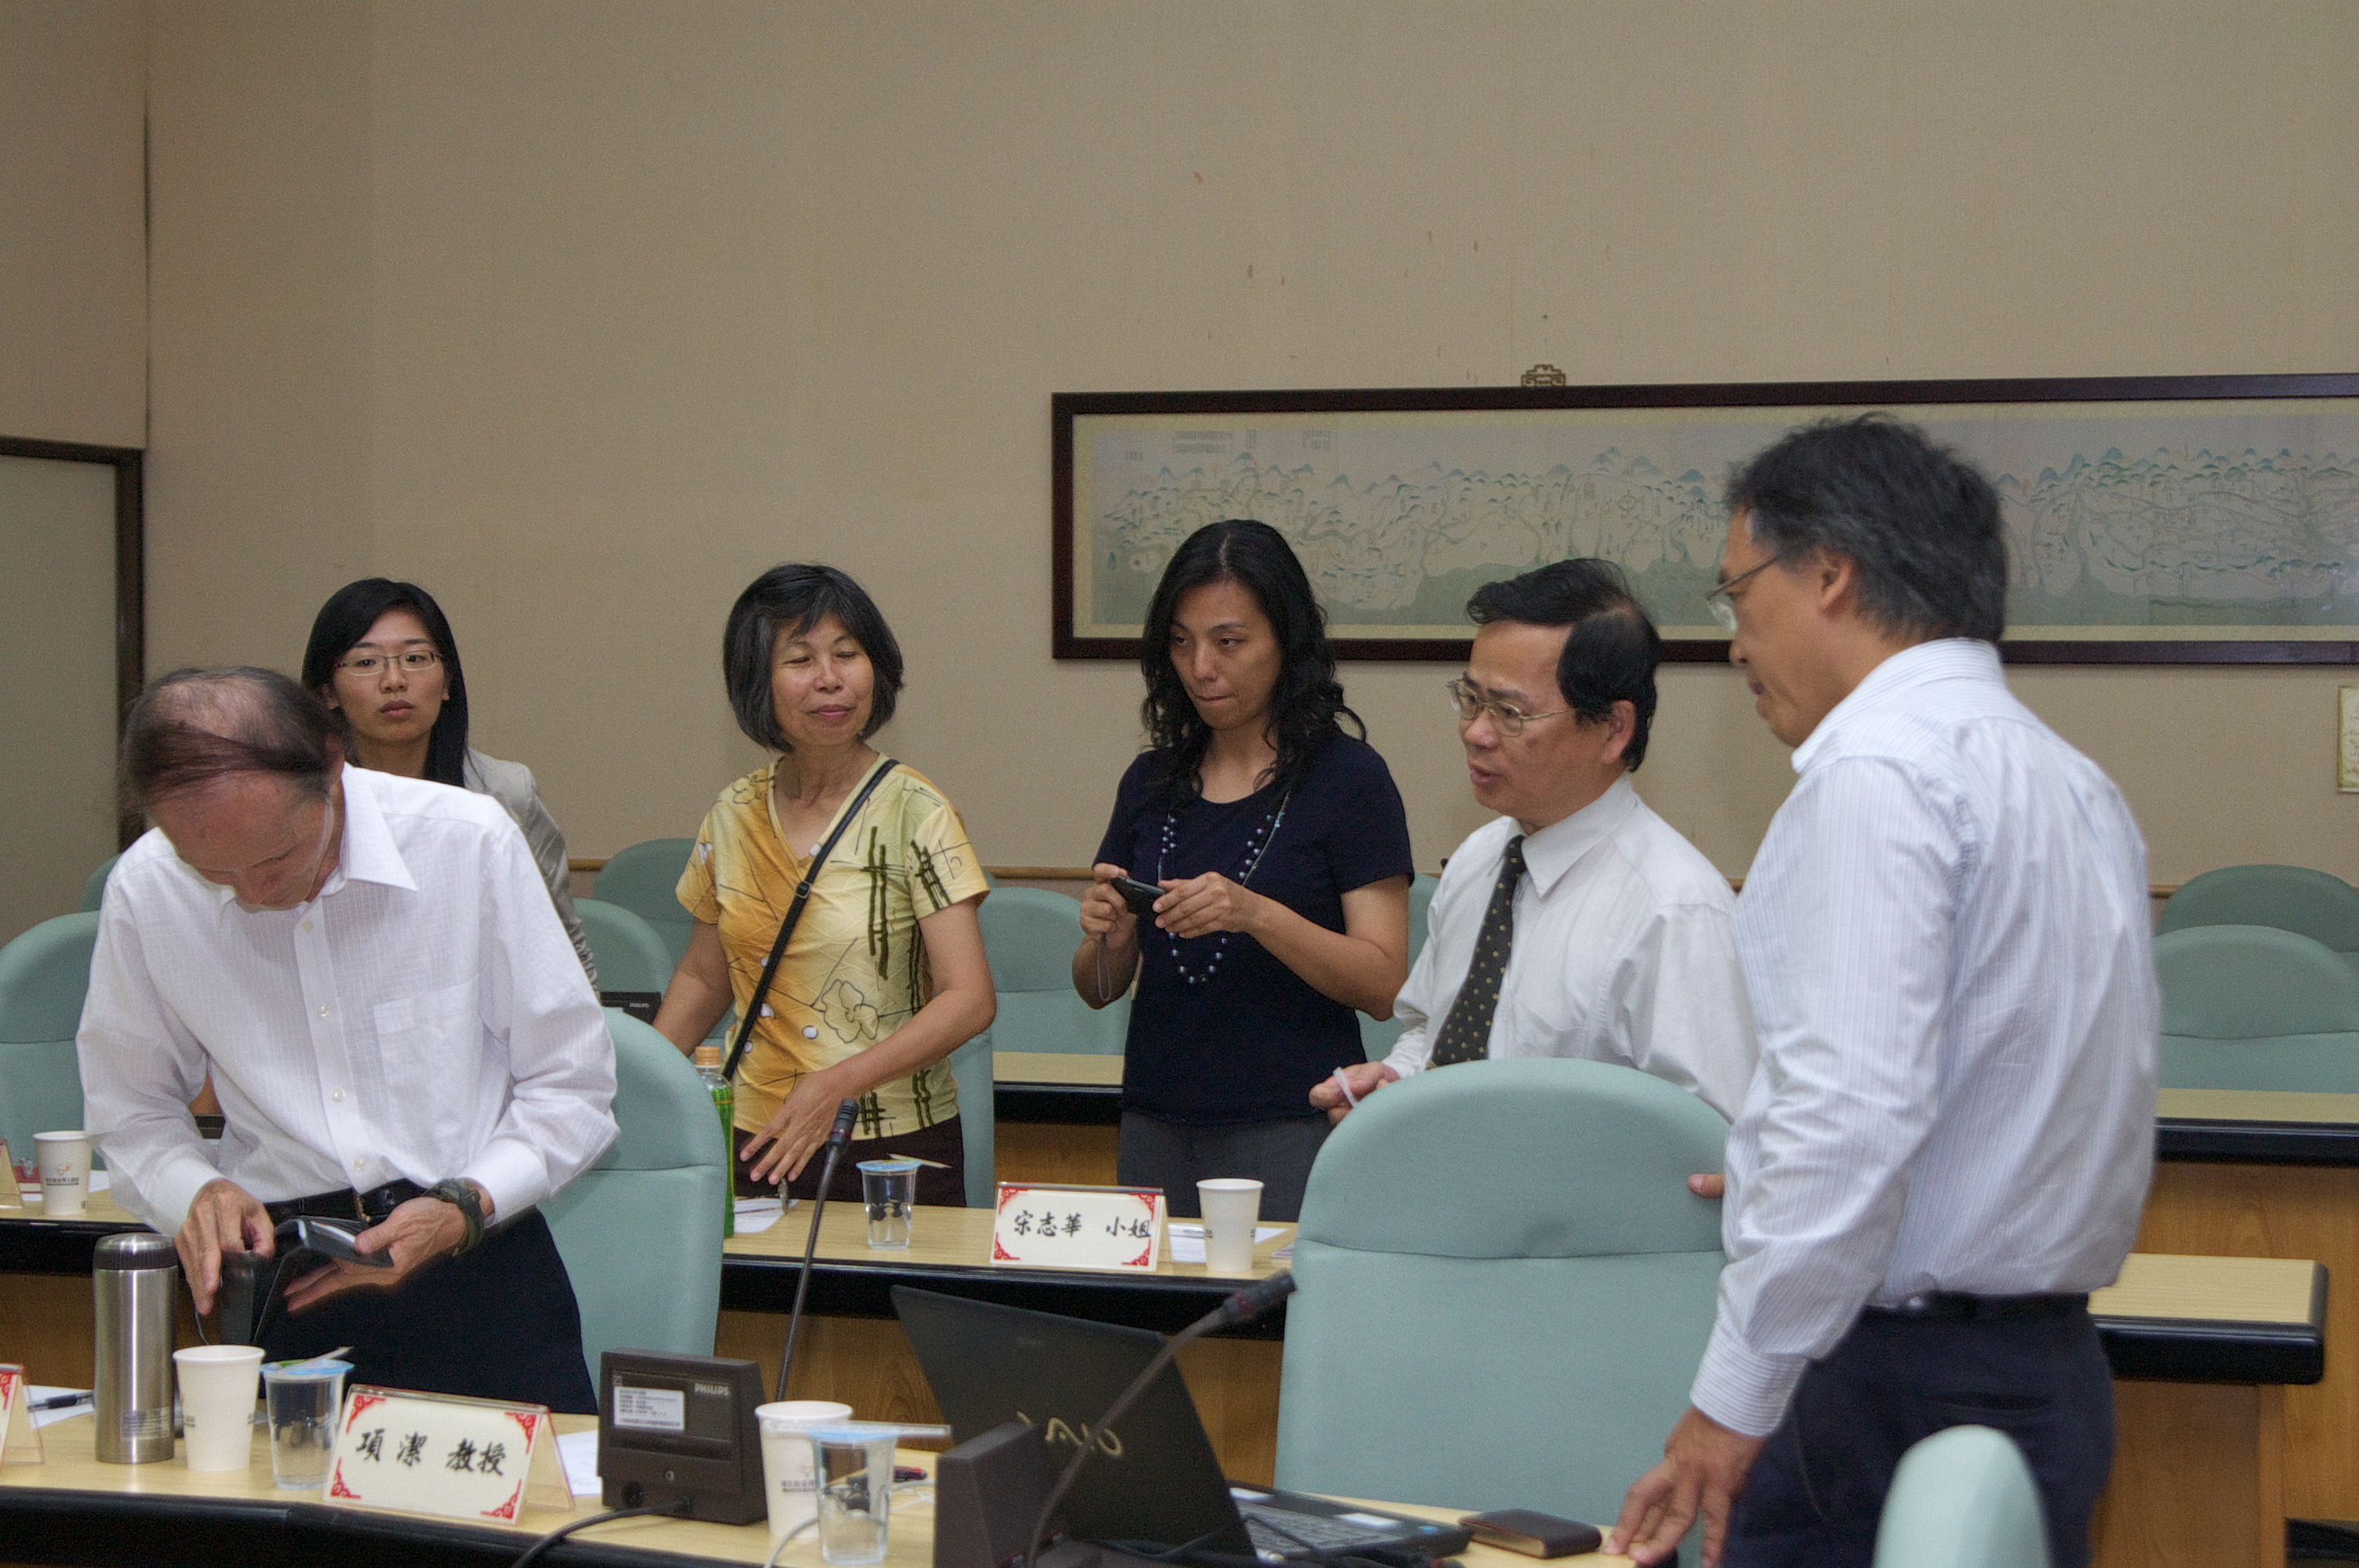 台灣大學數位典藏研究發展中心項潔主任率團參訪本館洽談數位化合作事宜